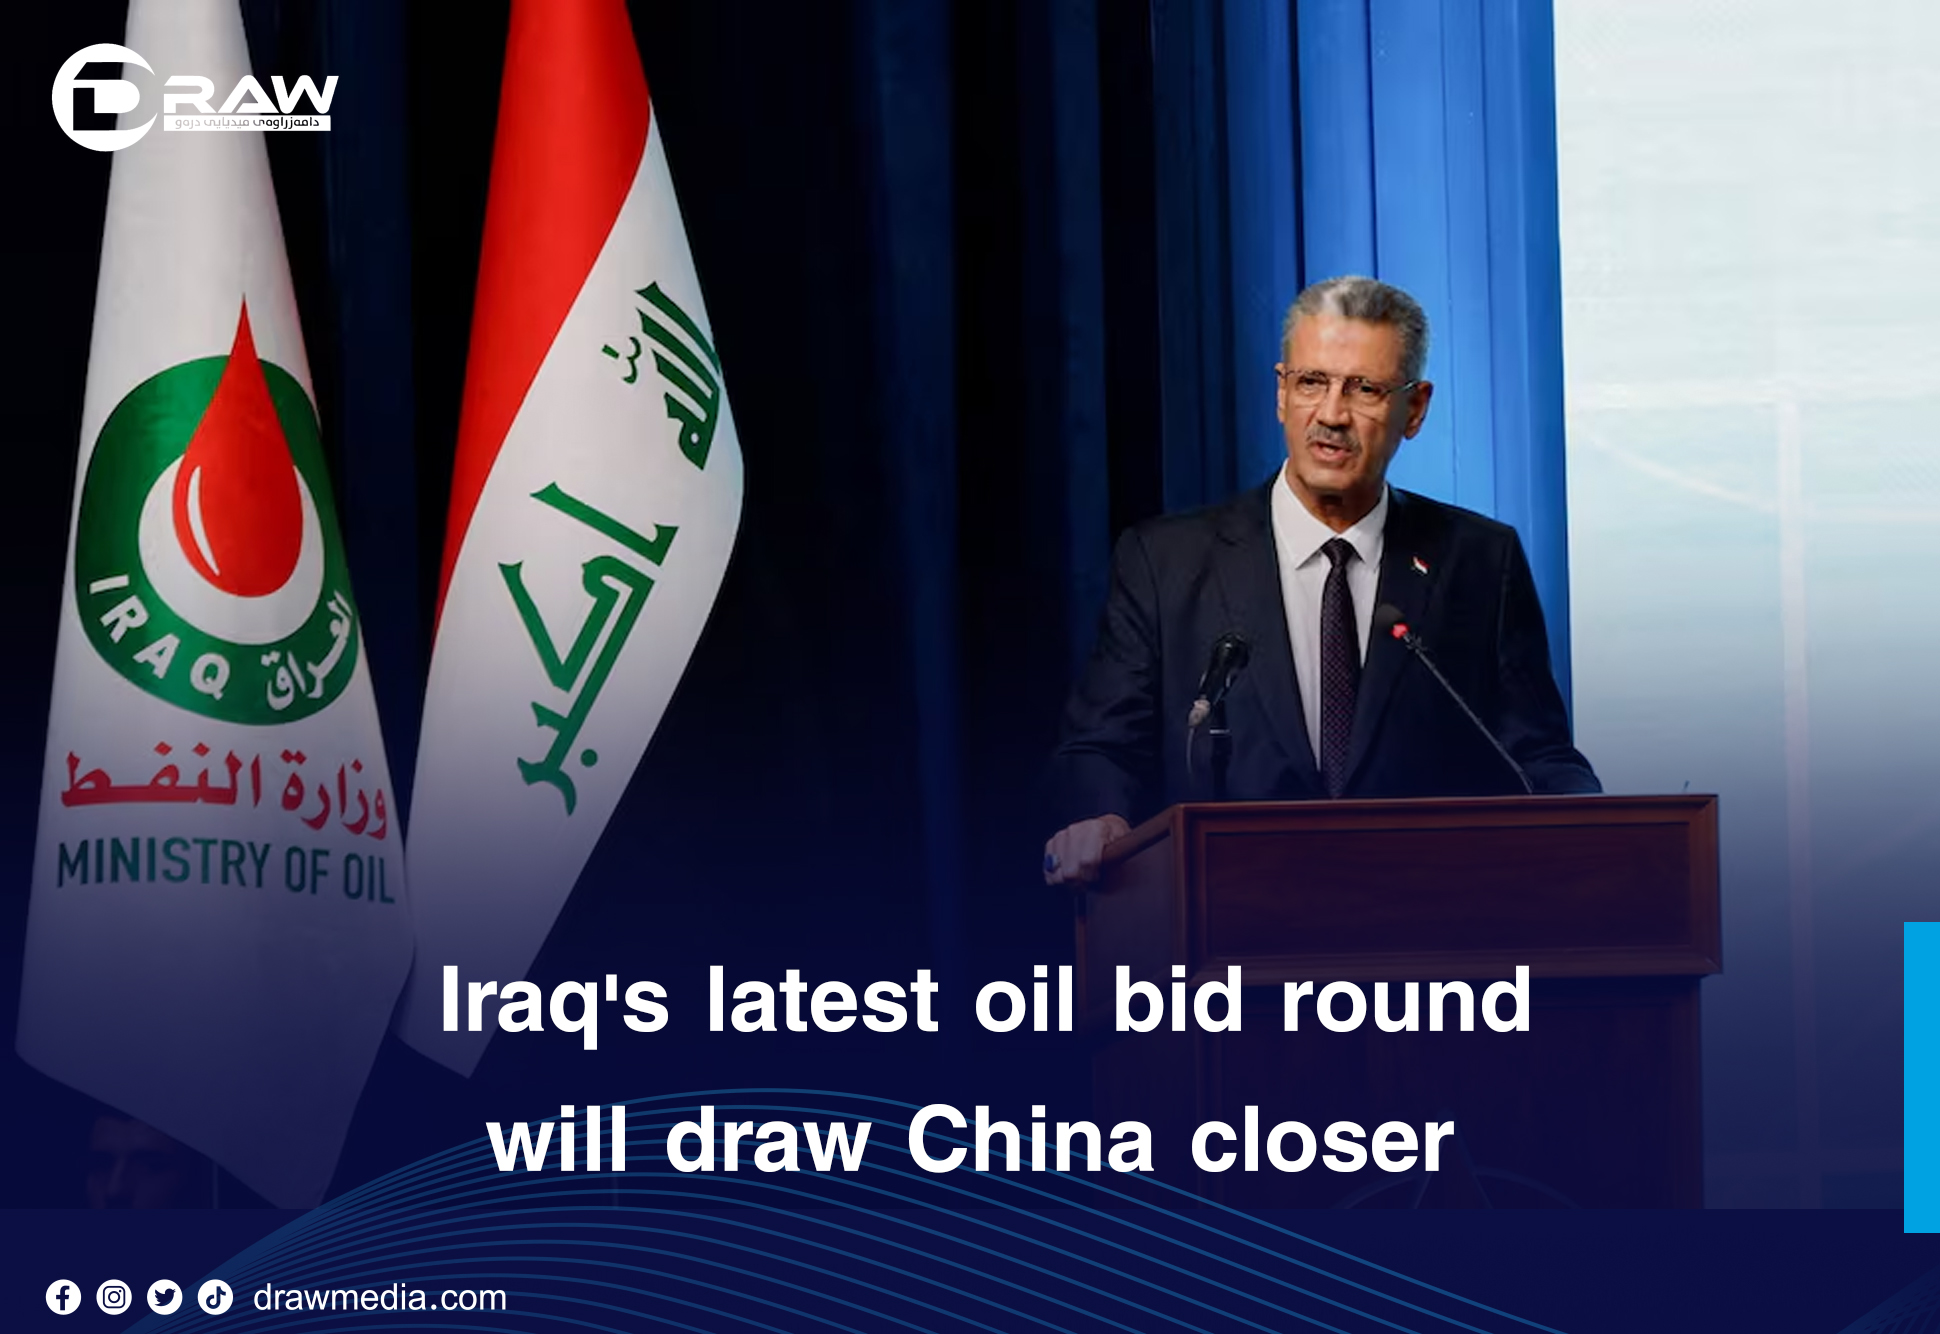 Draw Media- Iraq's latest oil bid round will draw China closer